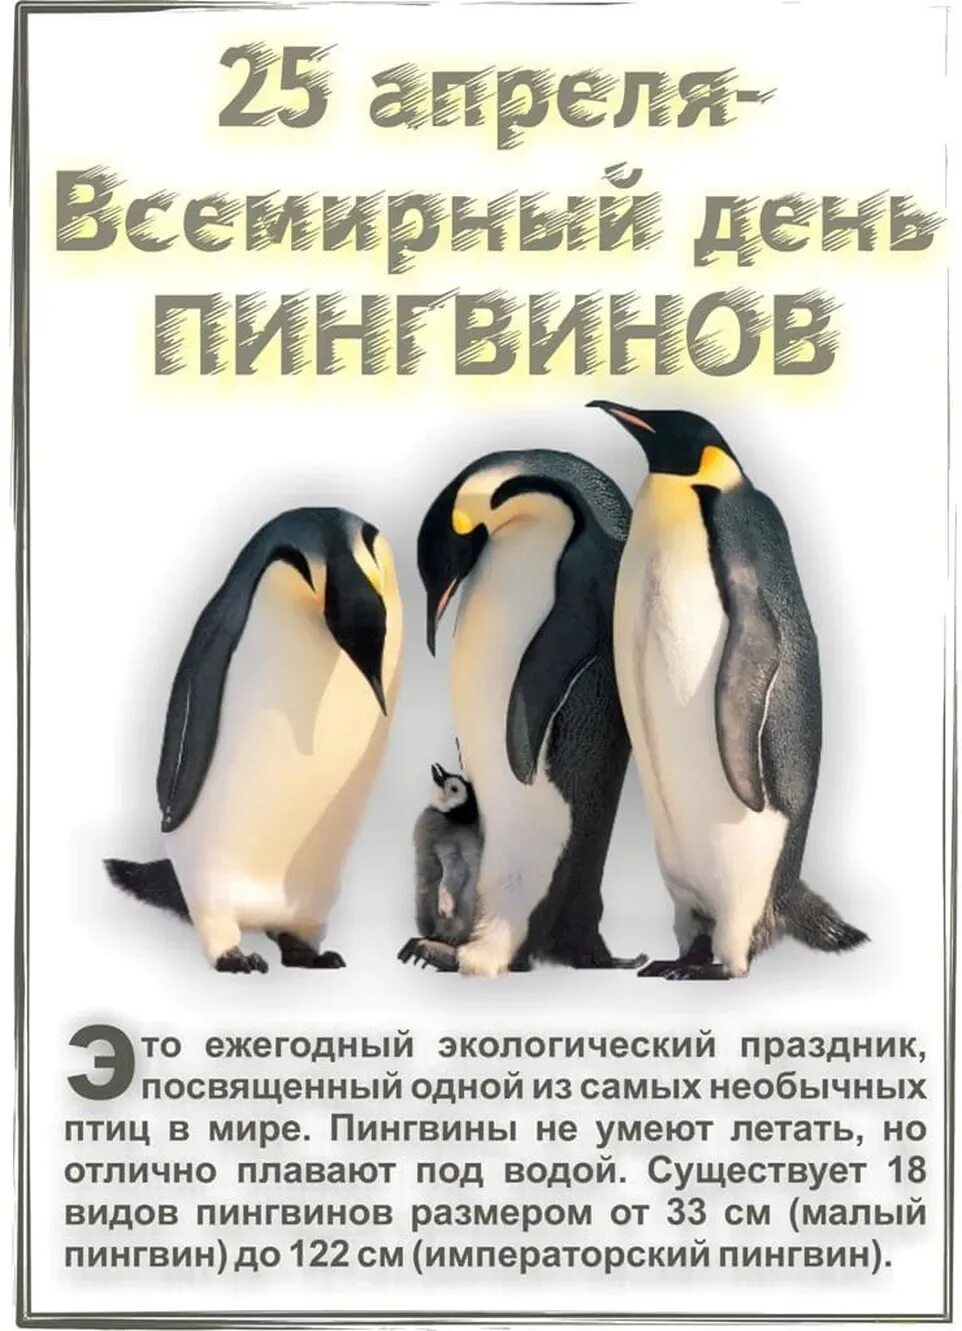 25 апреля какой праздник в россии. Всемирный день пингвинов 25 апреля. Всемныйдень пингвинов. Всемирныйсдень пингвинов. Открытка с днем пингвина.